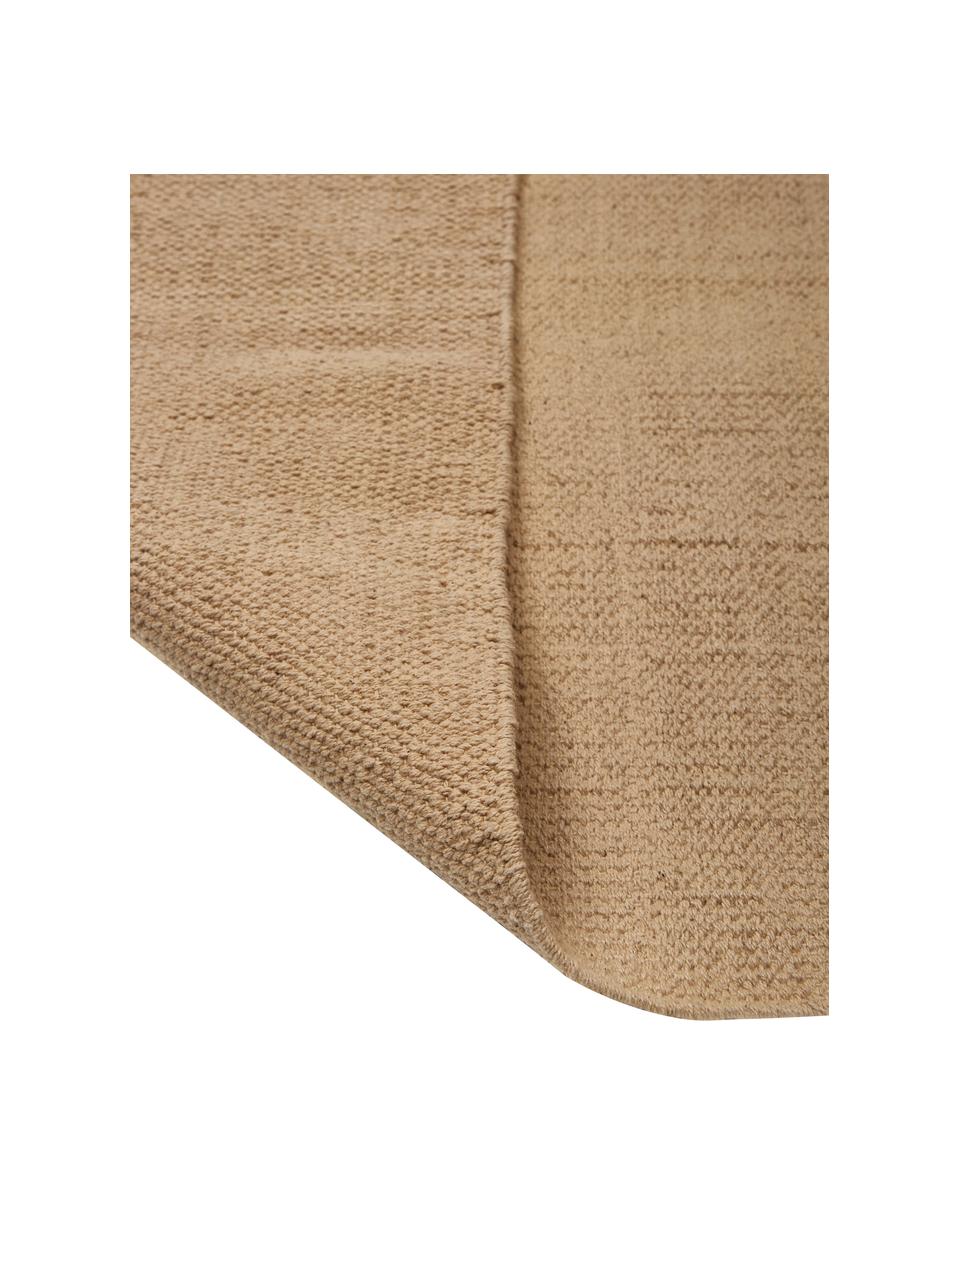 Baumwollteppich Agneta, 100% Baumwolle, Beige, 50 x 80 cm